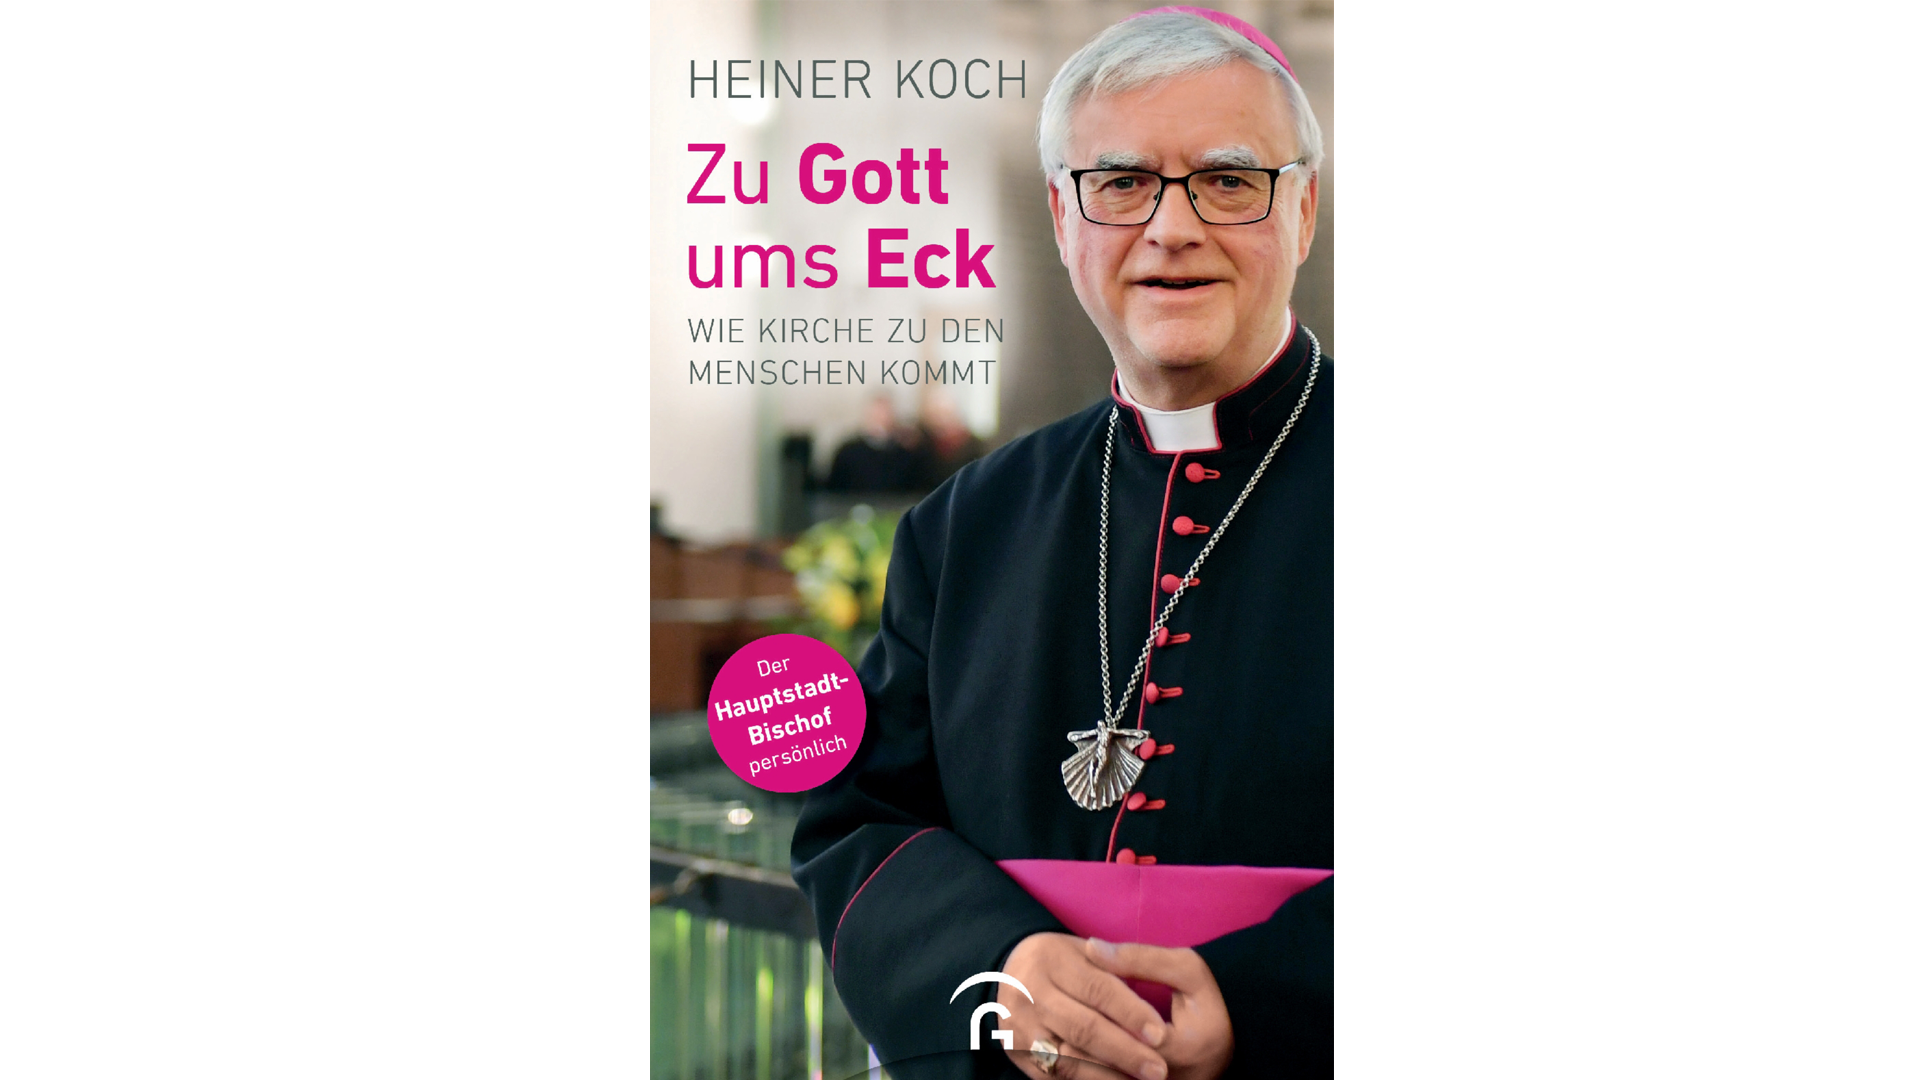 Heiner Koch macht in seinem neuen Buch eine Bestandsaufnahme zur Situation der Kirche in einer säkularen Gesellschaft